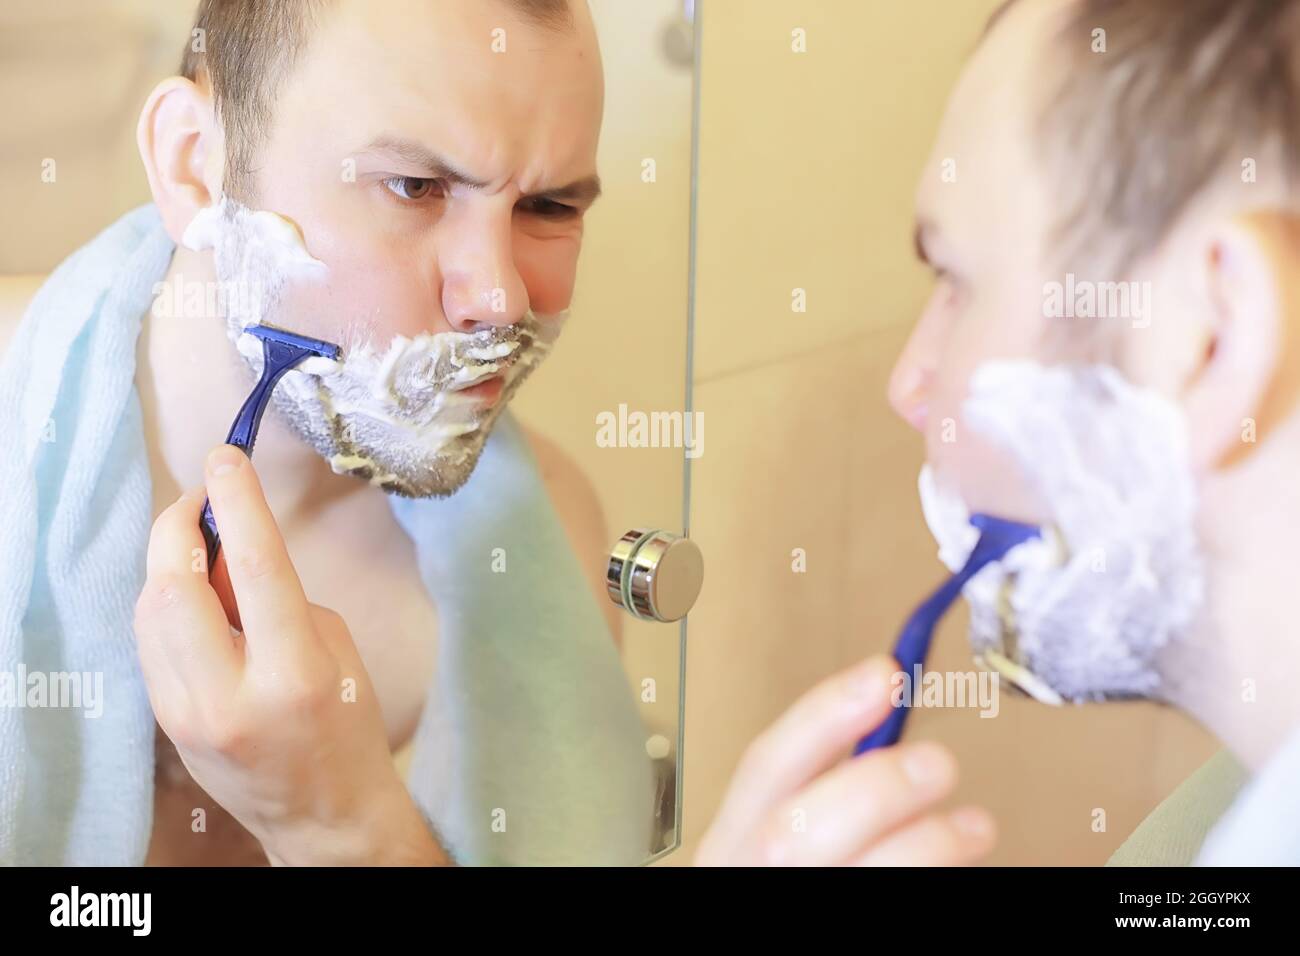 Правильно брить видео. Парень бреется. Фотосет мужчина бреется. Бородатый мужчина бреется в ванной. Мужик бреет многолетнюю бороду.